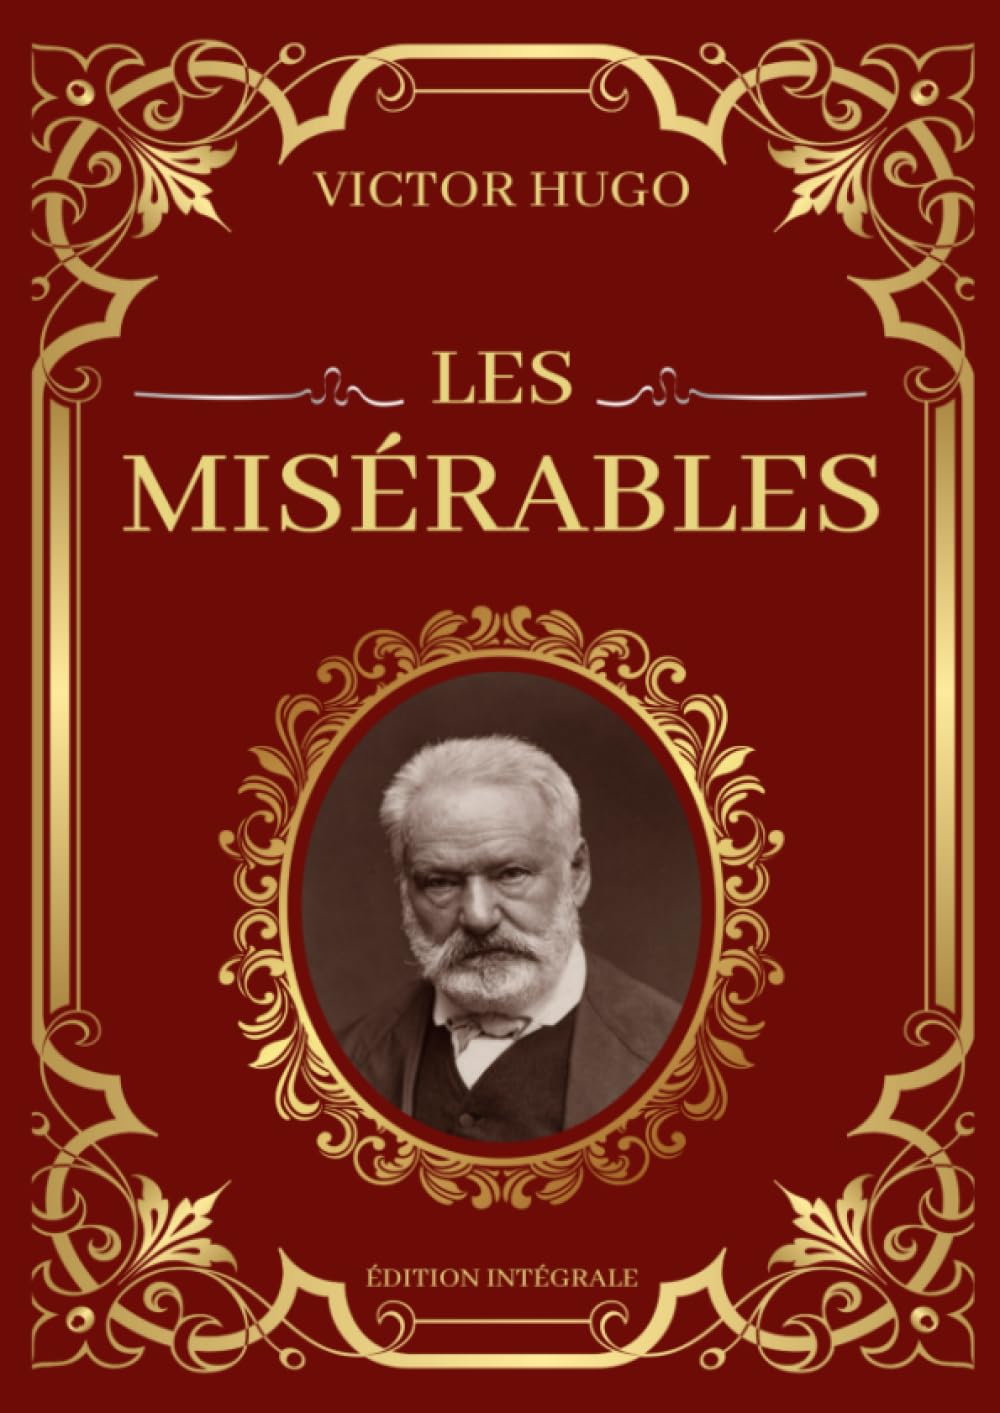 You are currently viewing Un peu du Paris des Misérables et de Victor Hugo.